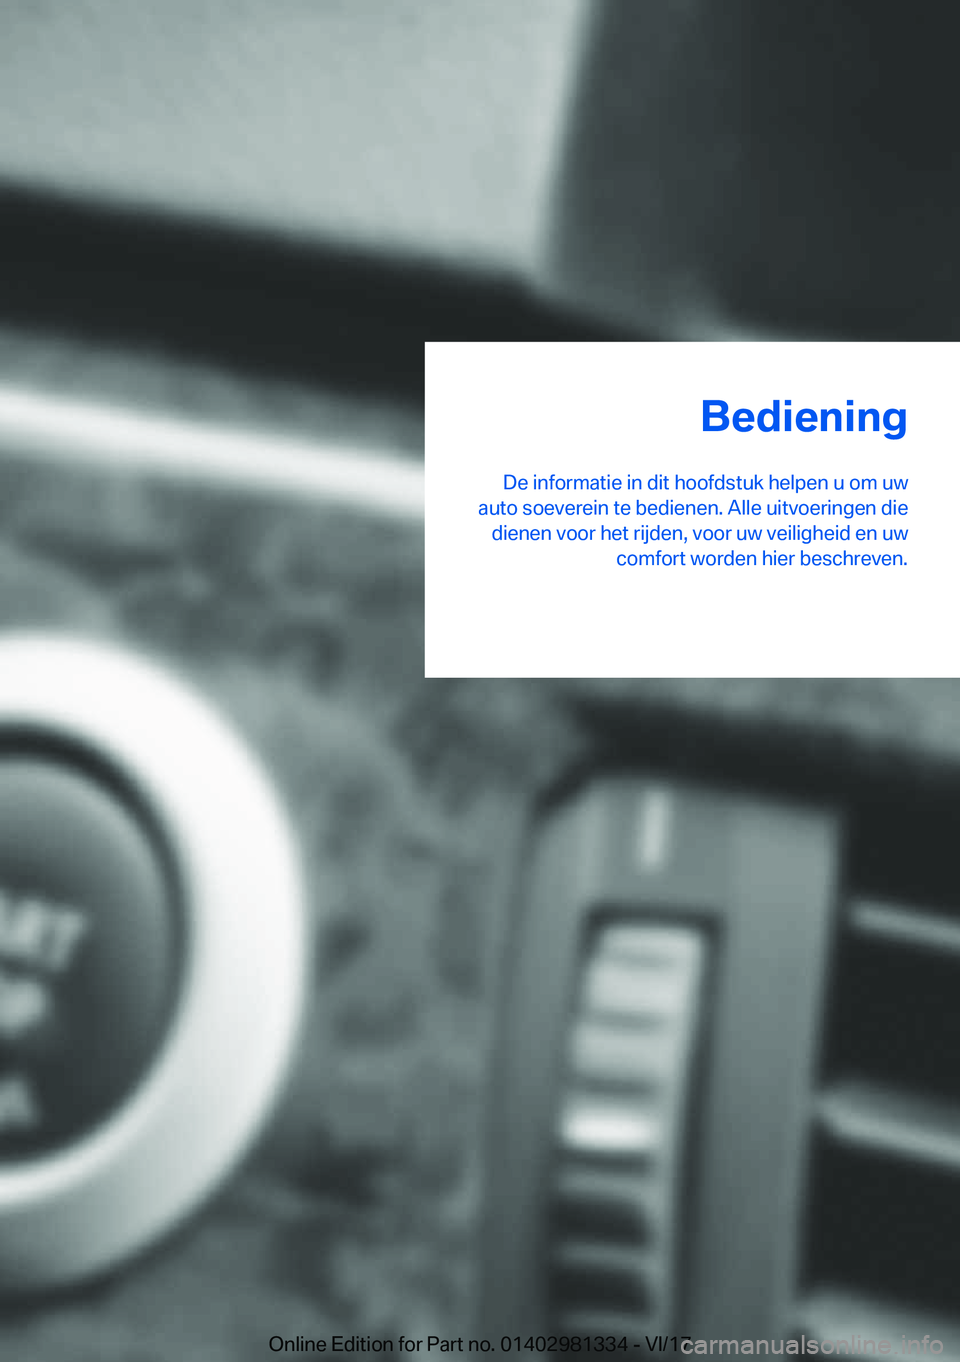 BMW X4 2018  Instructieboekjes (in Dutch) �B�e�d�i�e�n�i�n�g
�D�e� �i�n�f�o�r�m�a�t�i�e� �i�n� �d�i�t� �h�o�o�f�d�s�t�u�k� �h�e�l�p�e�n� �u� �o�m� �u�w
�a�u�t�o� �s�o�e�v�e�r�e�i�n� �t�e� �b�e�d�i�e�n�e�n�.� �A�l�l�e� �u�i�t�v�o�e�r�i�n�g�e�n